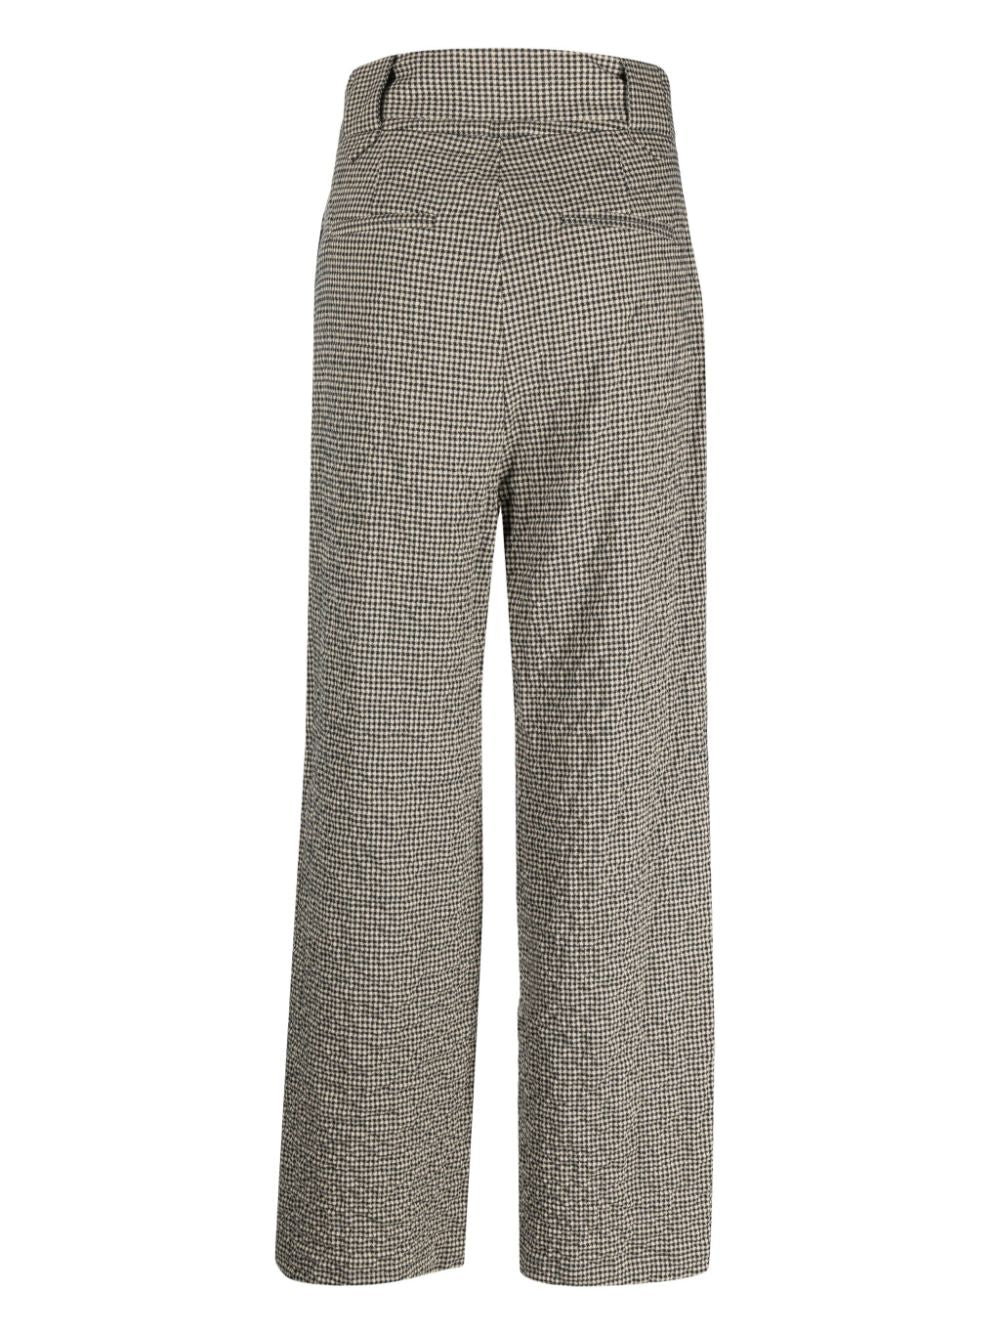 Alysi Trousers Grey